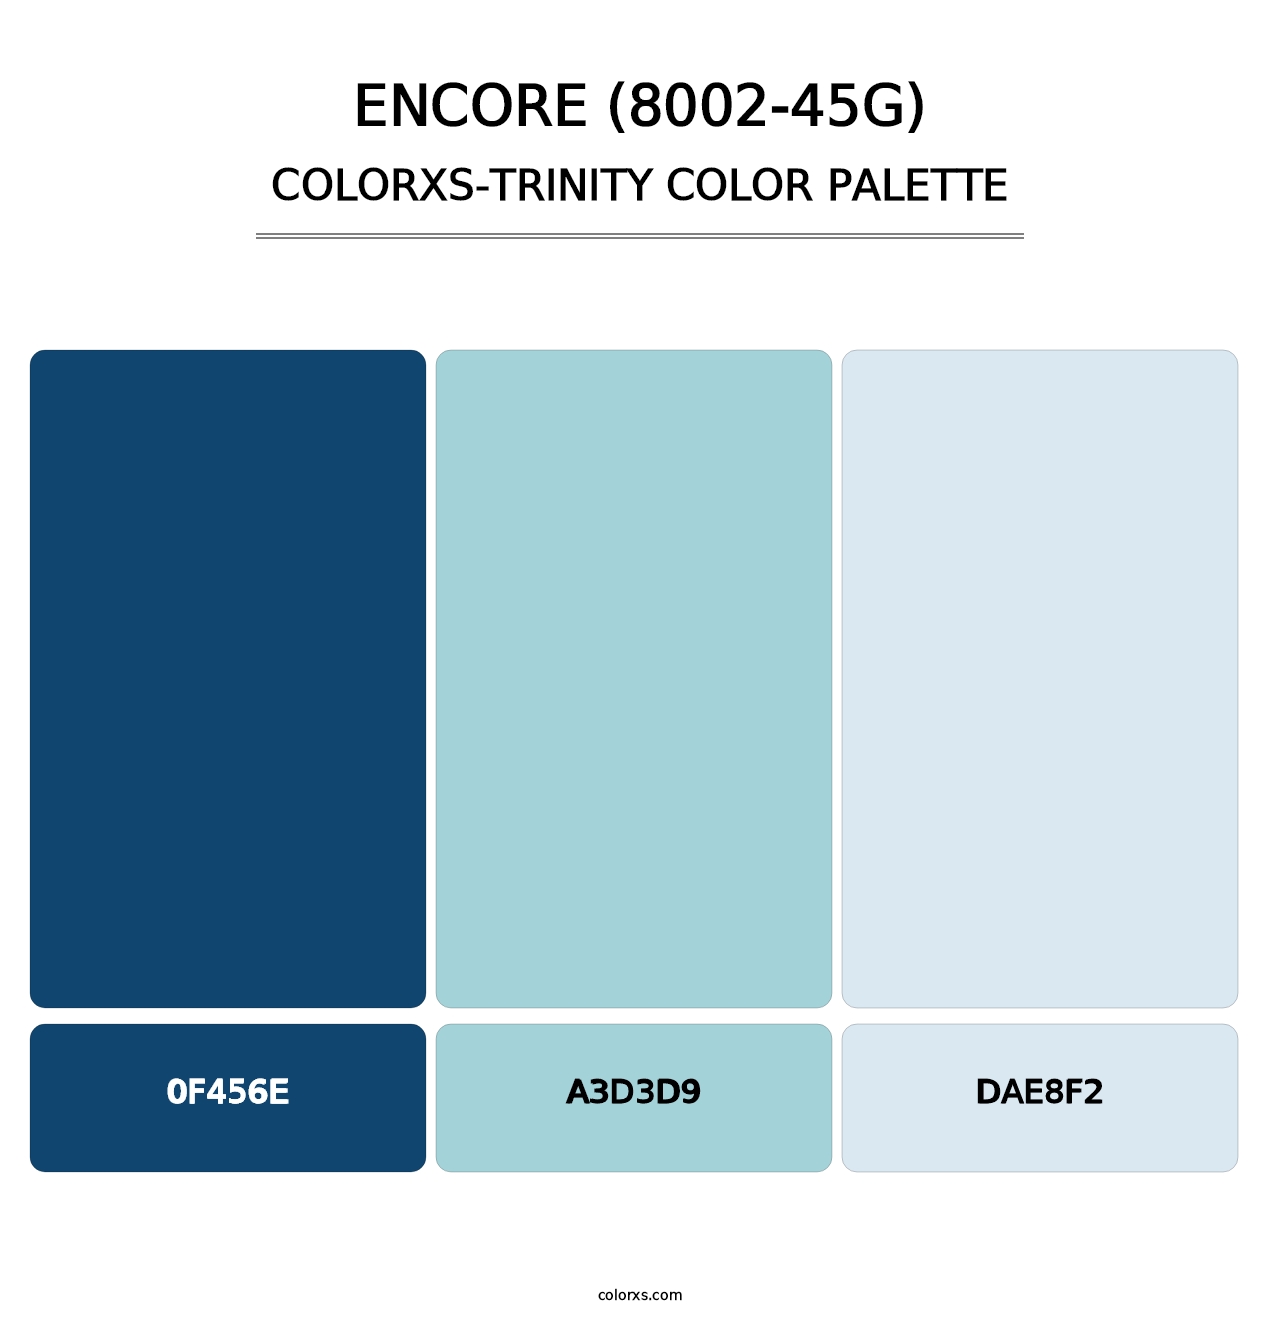 Encore (8002-45G) - Colorxs Trinity Palette